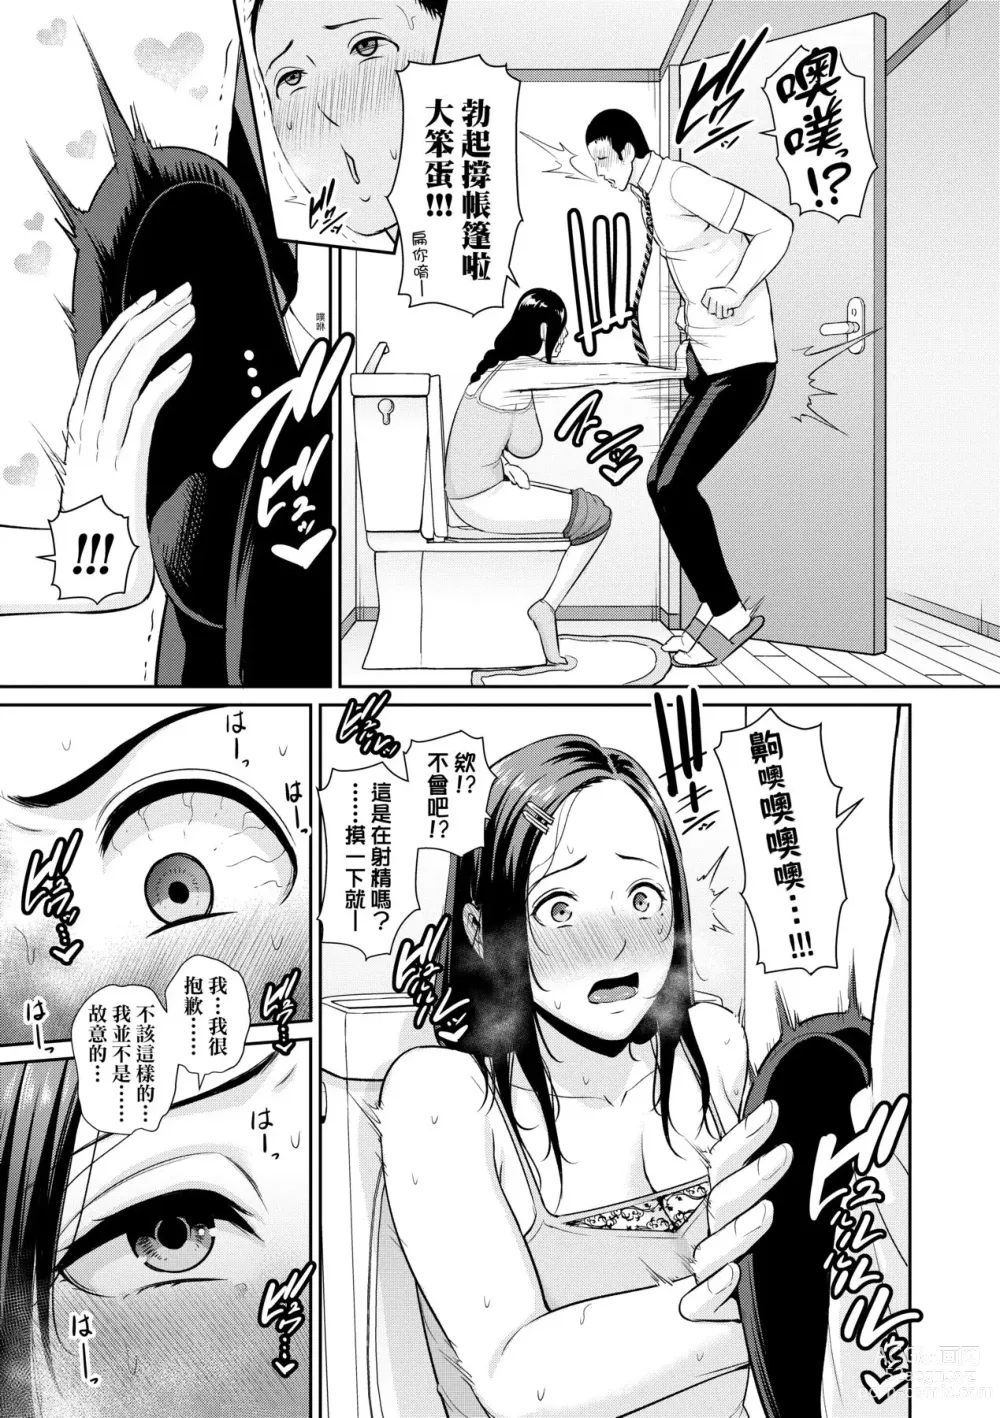 Page 12 of manga 朋友的馬麻 (decensored)